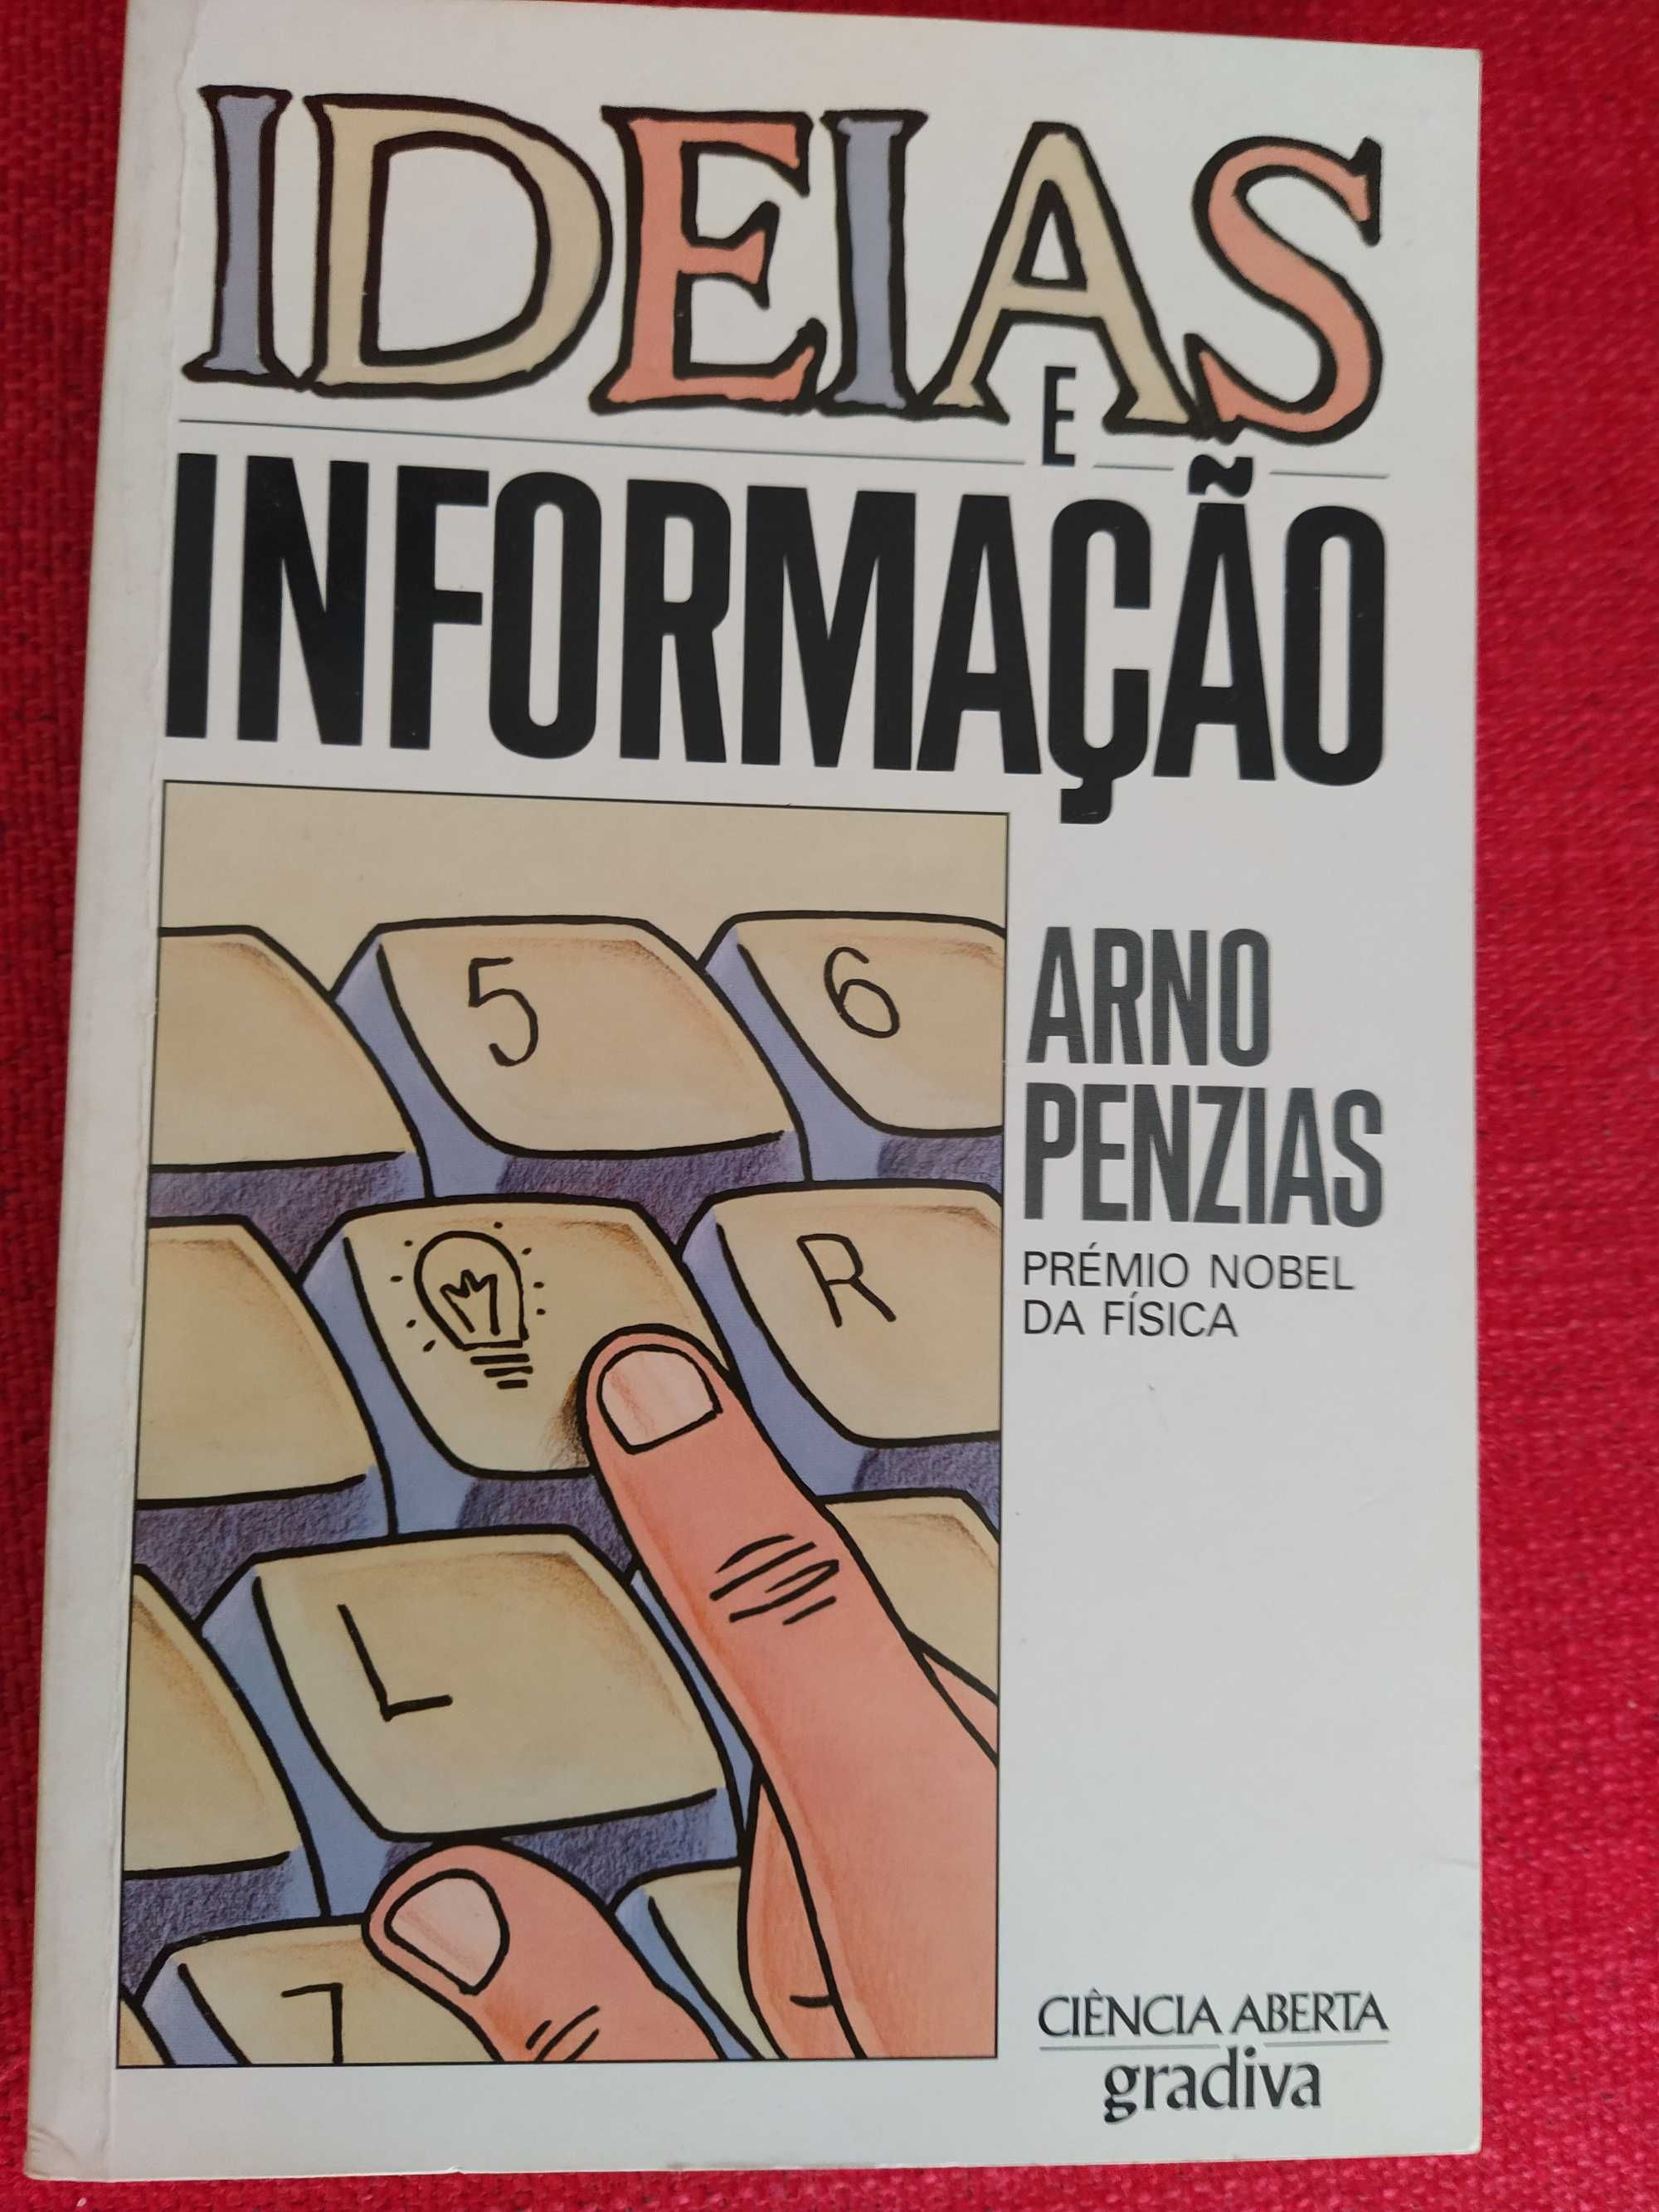 Ideias e Informação - Arno Penzias - Prémio Nobel Física